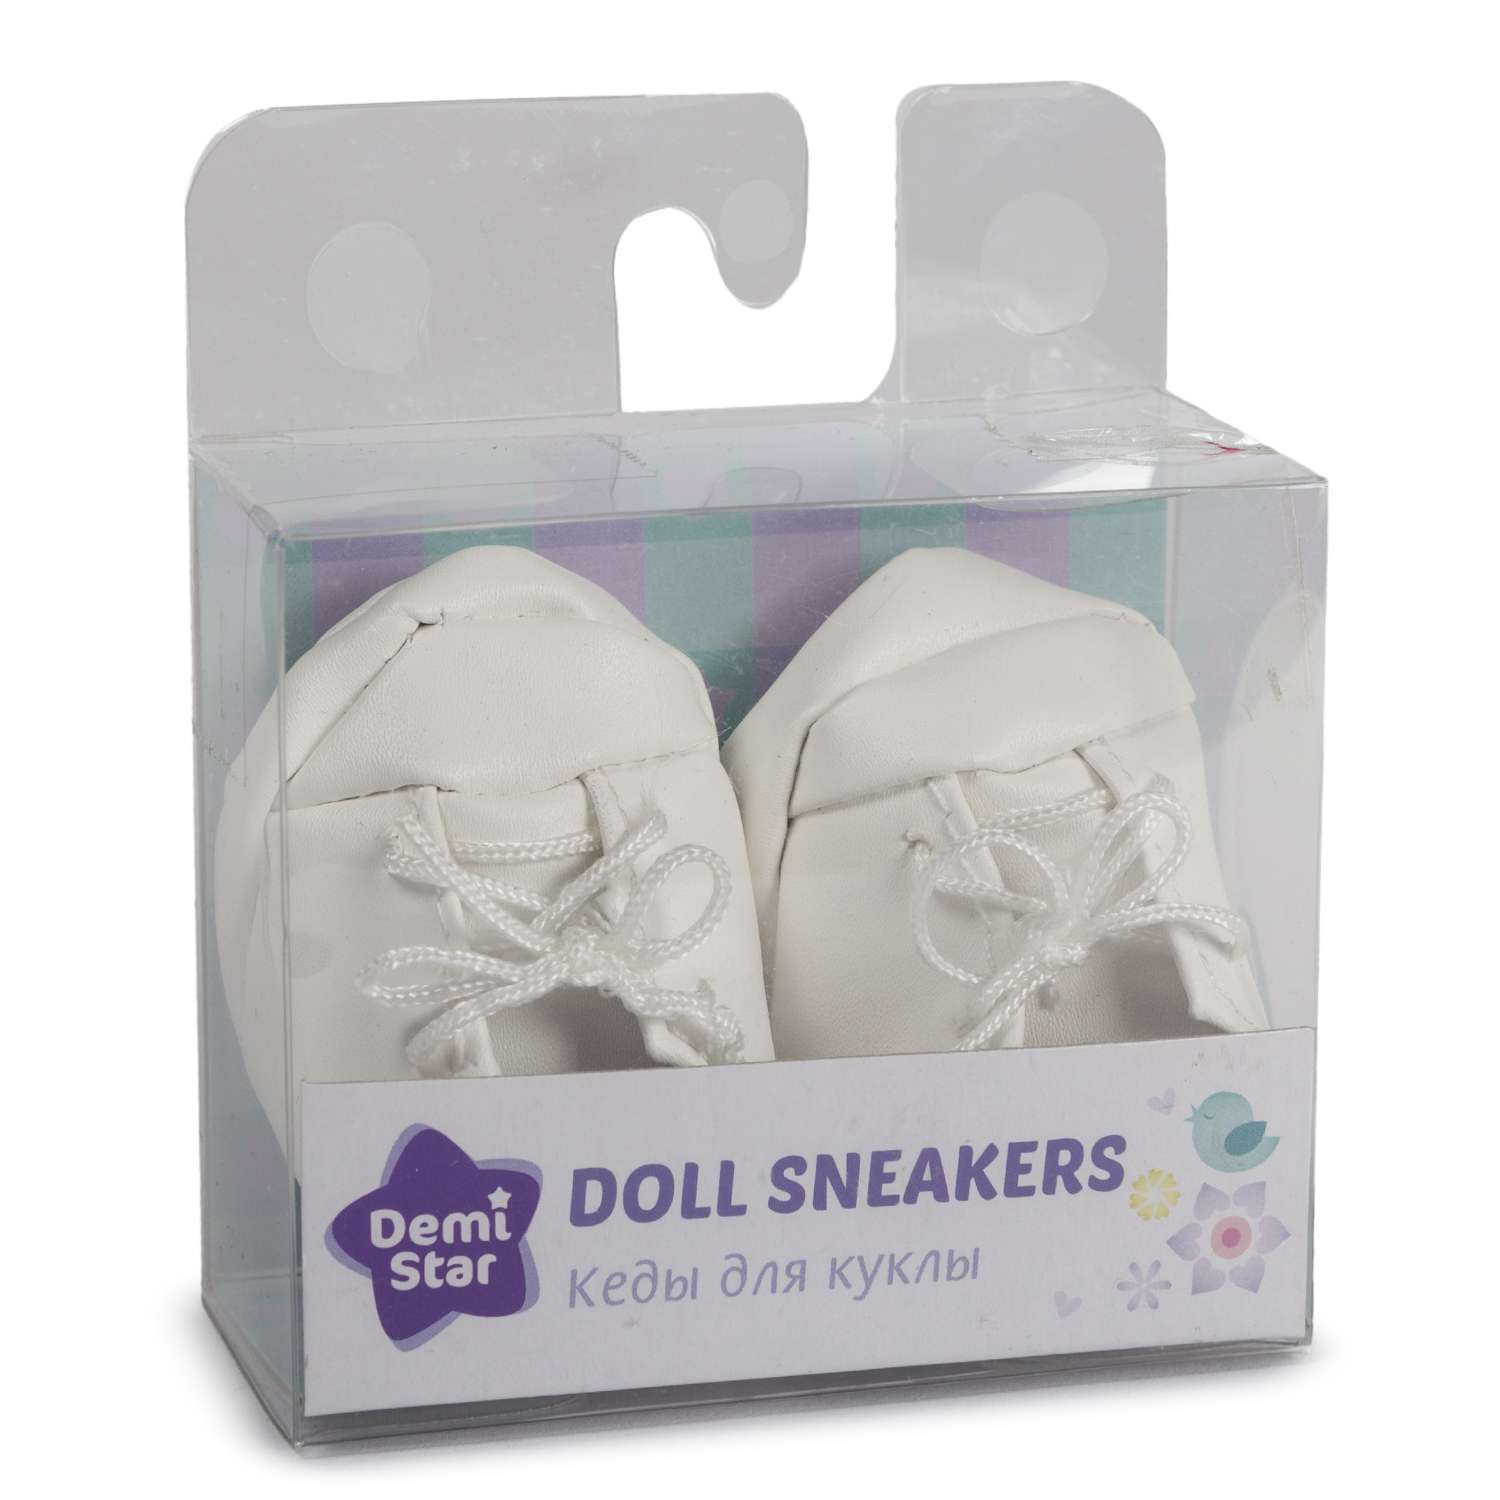 Обувь для куклы Demi Star кеды в ассортименте 6205E - фото 3